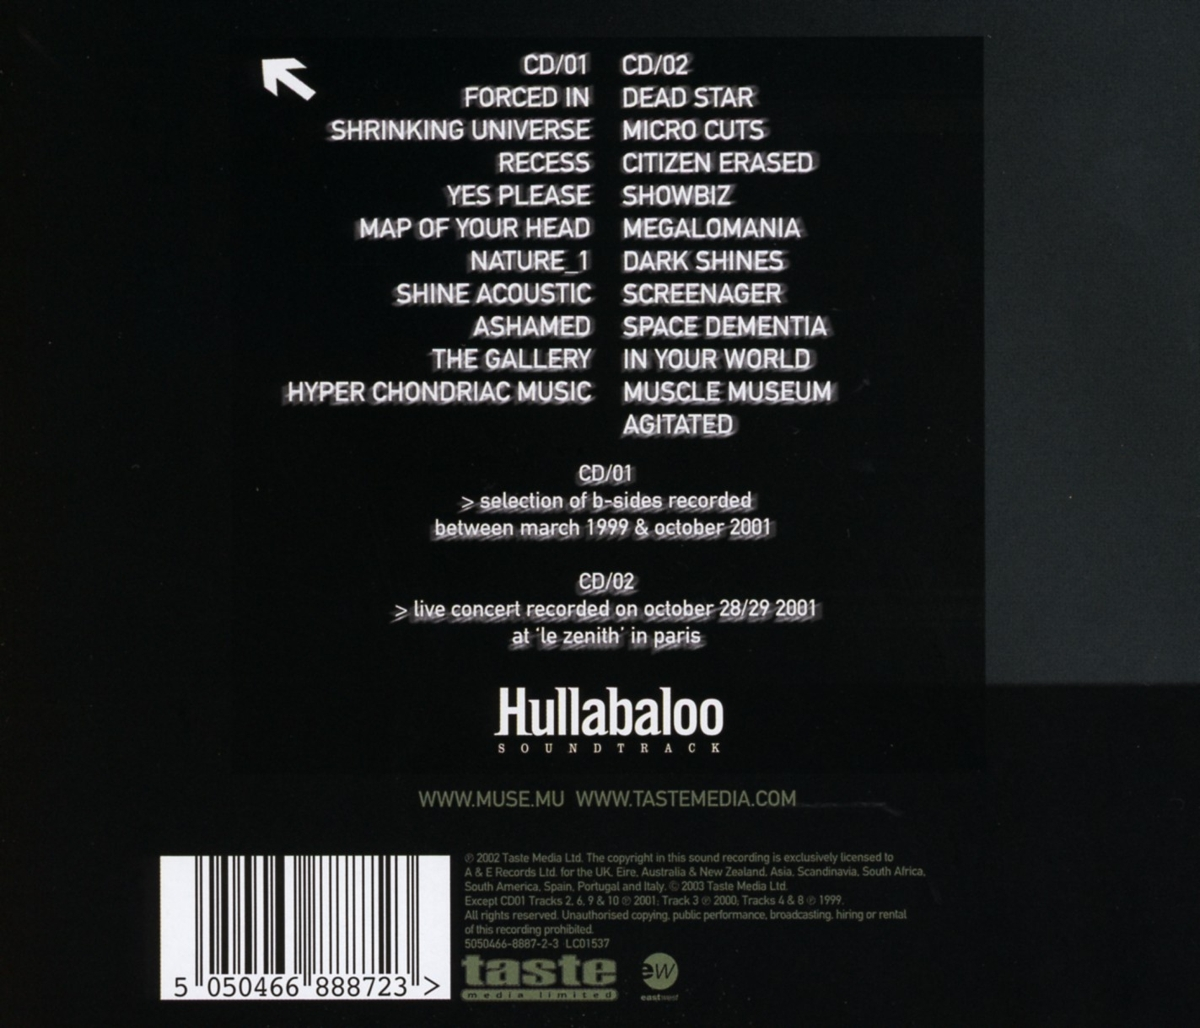 - Hullabaloo - Muse (CD)